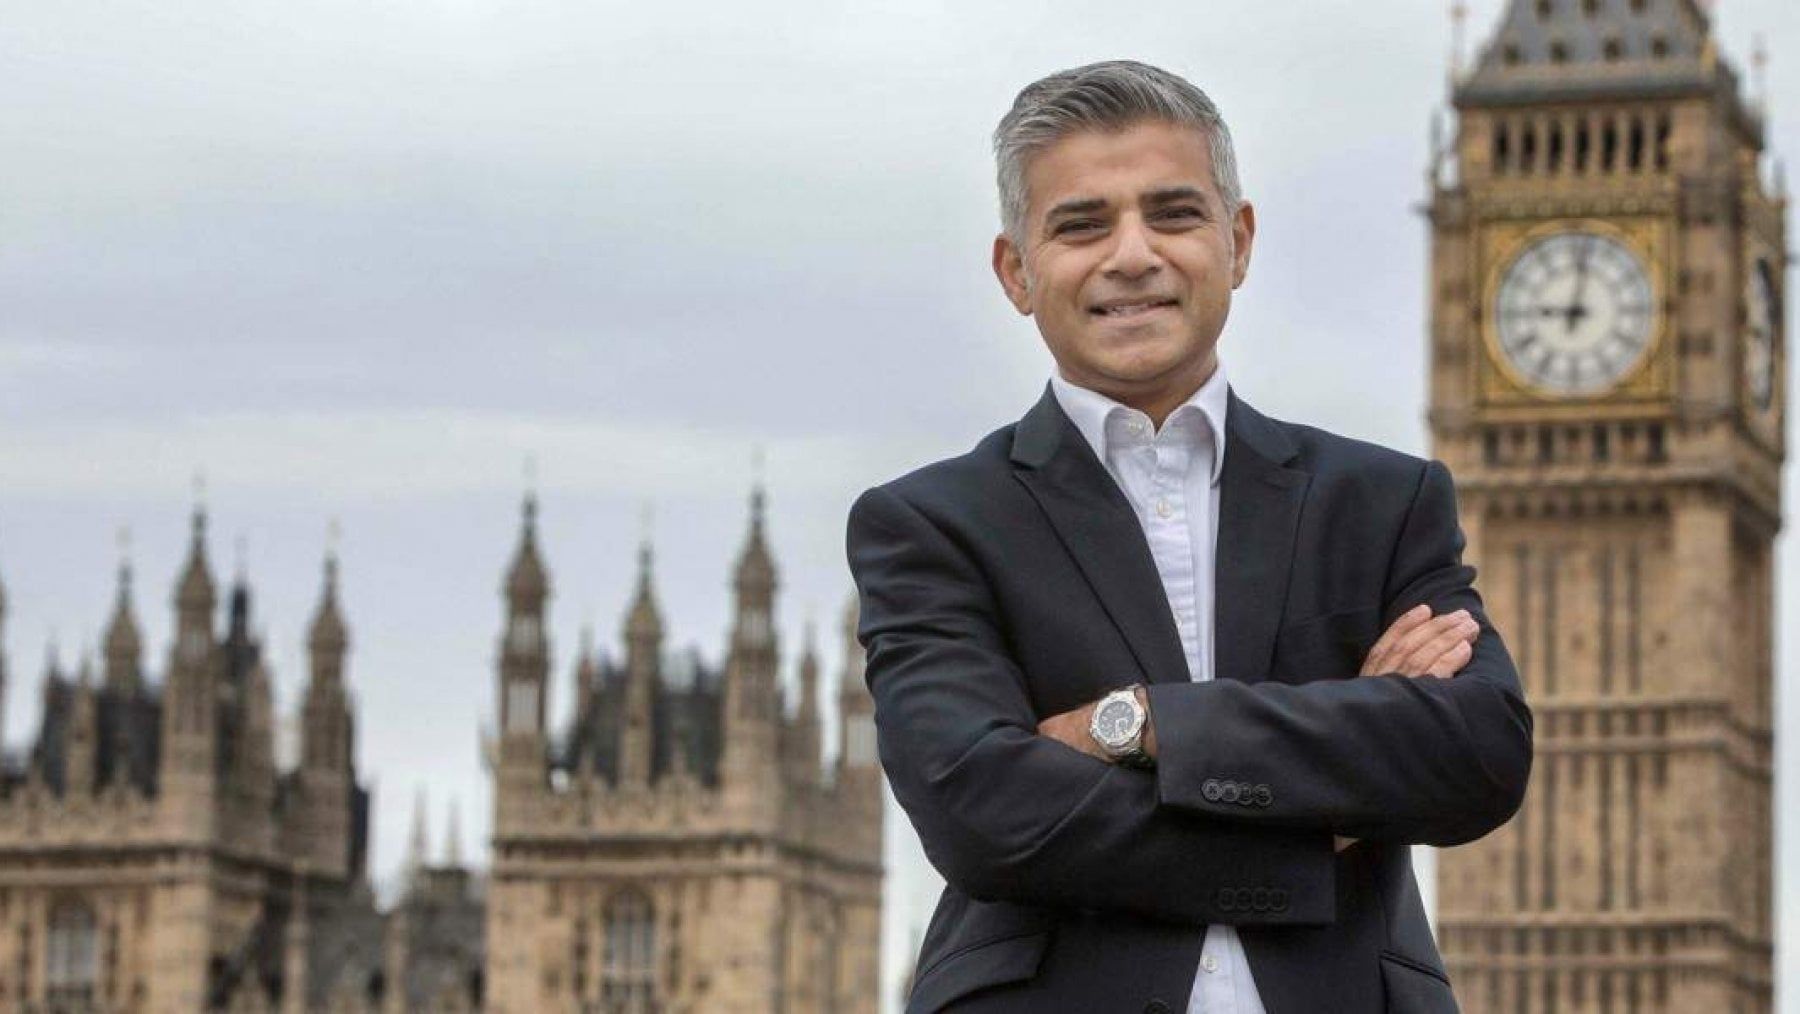 伦敦市长遭地产商抗议:别逼我们建造经济适用房